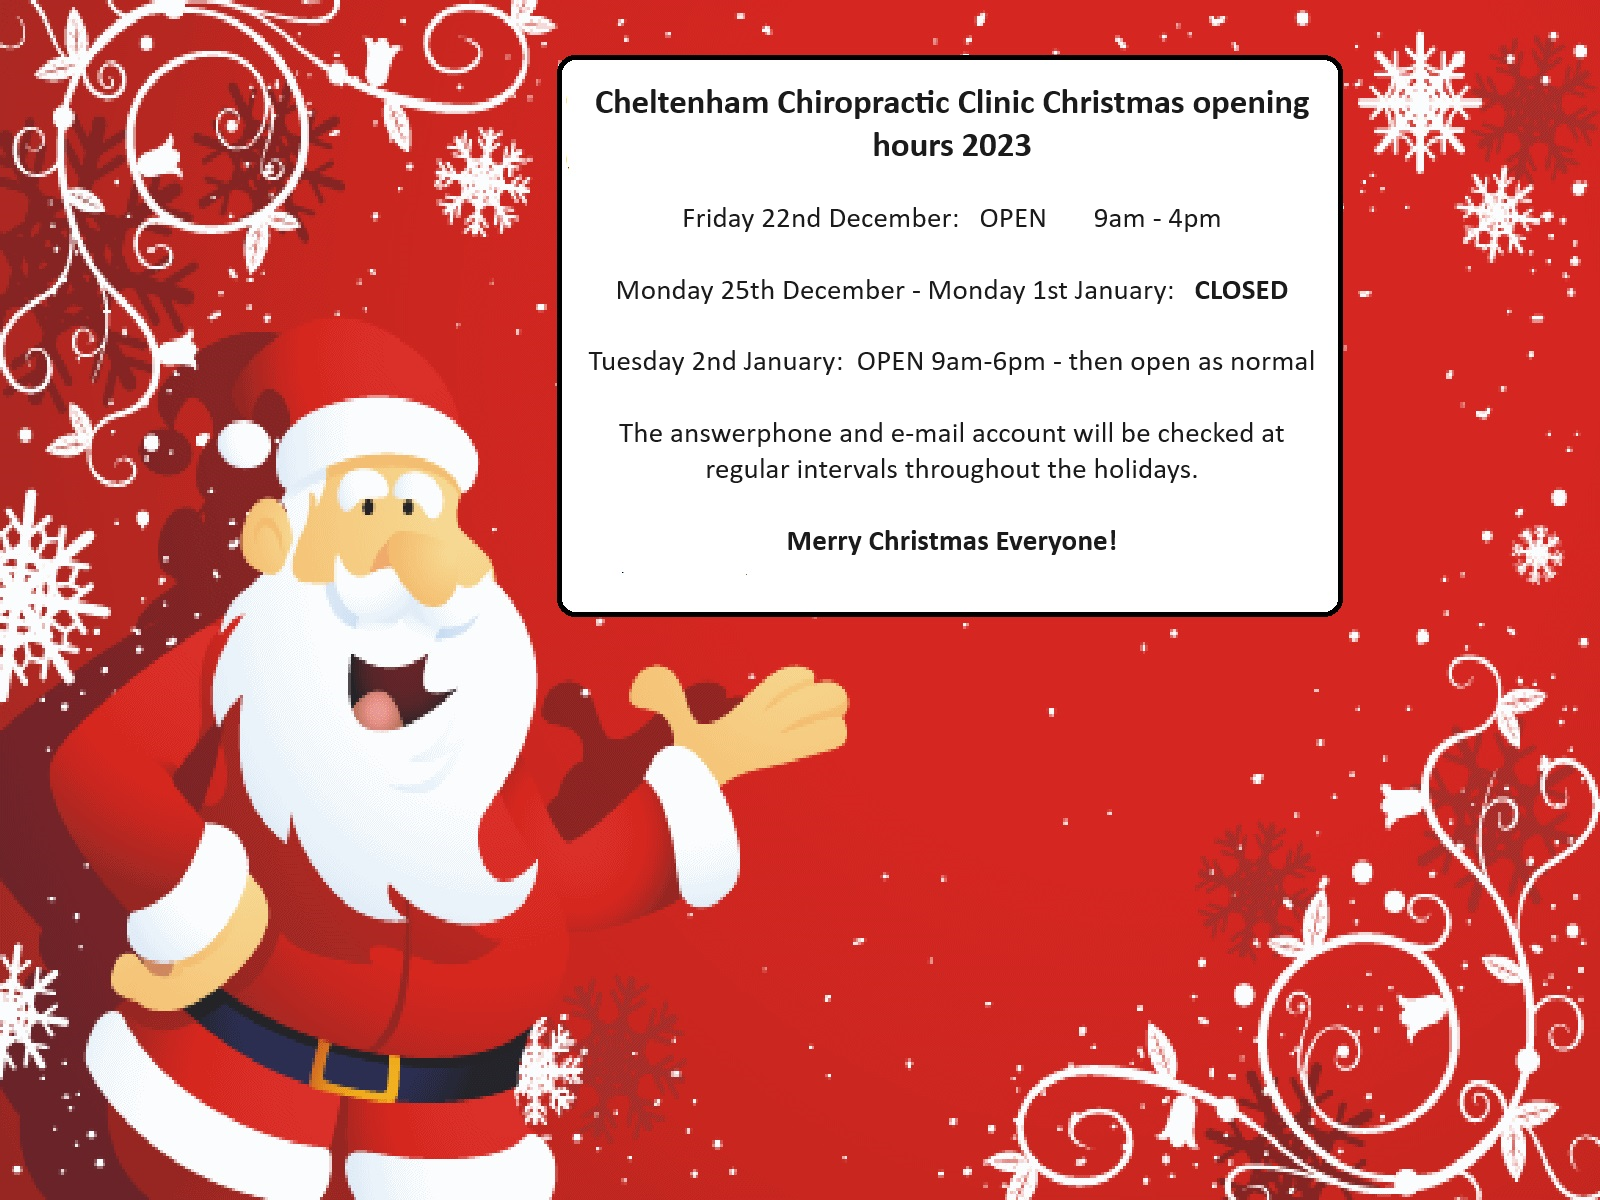 Cheltenham Chiropractic Clinic Christmas opening hours 2023